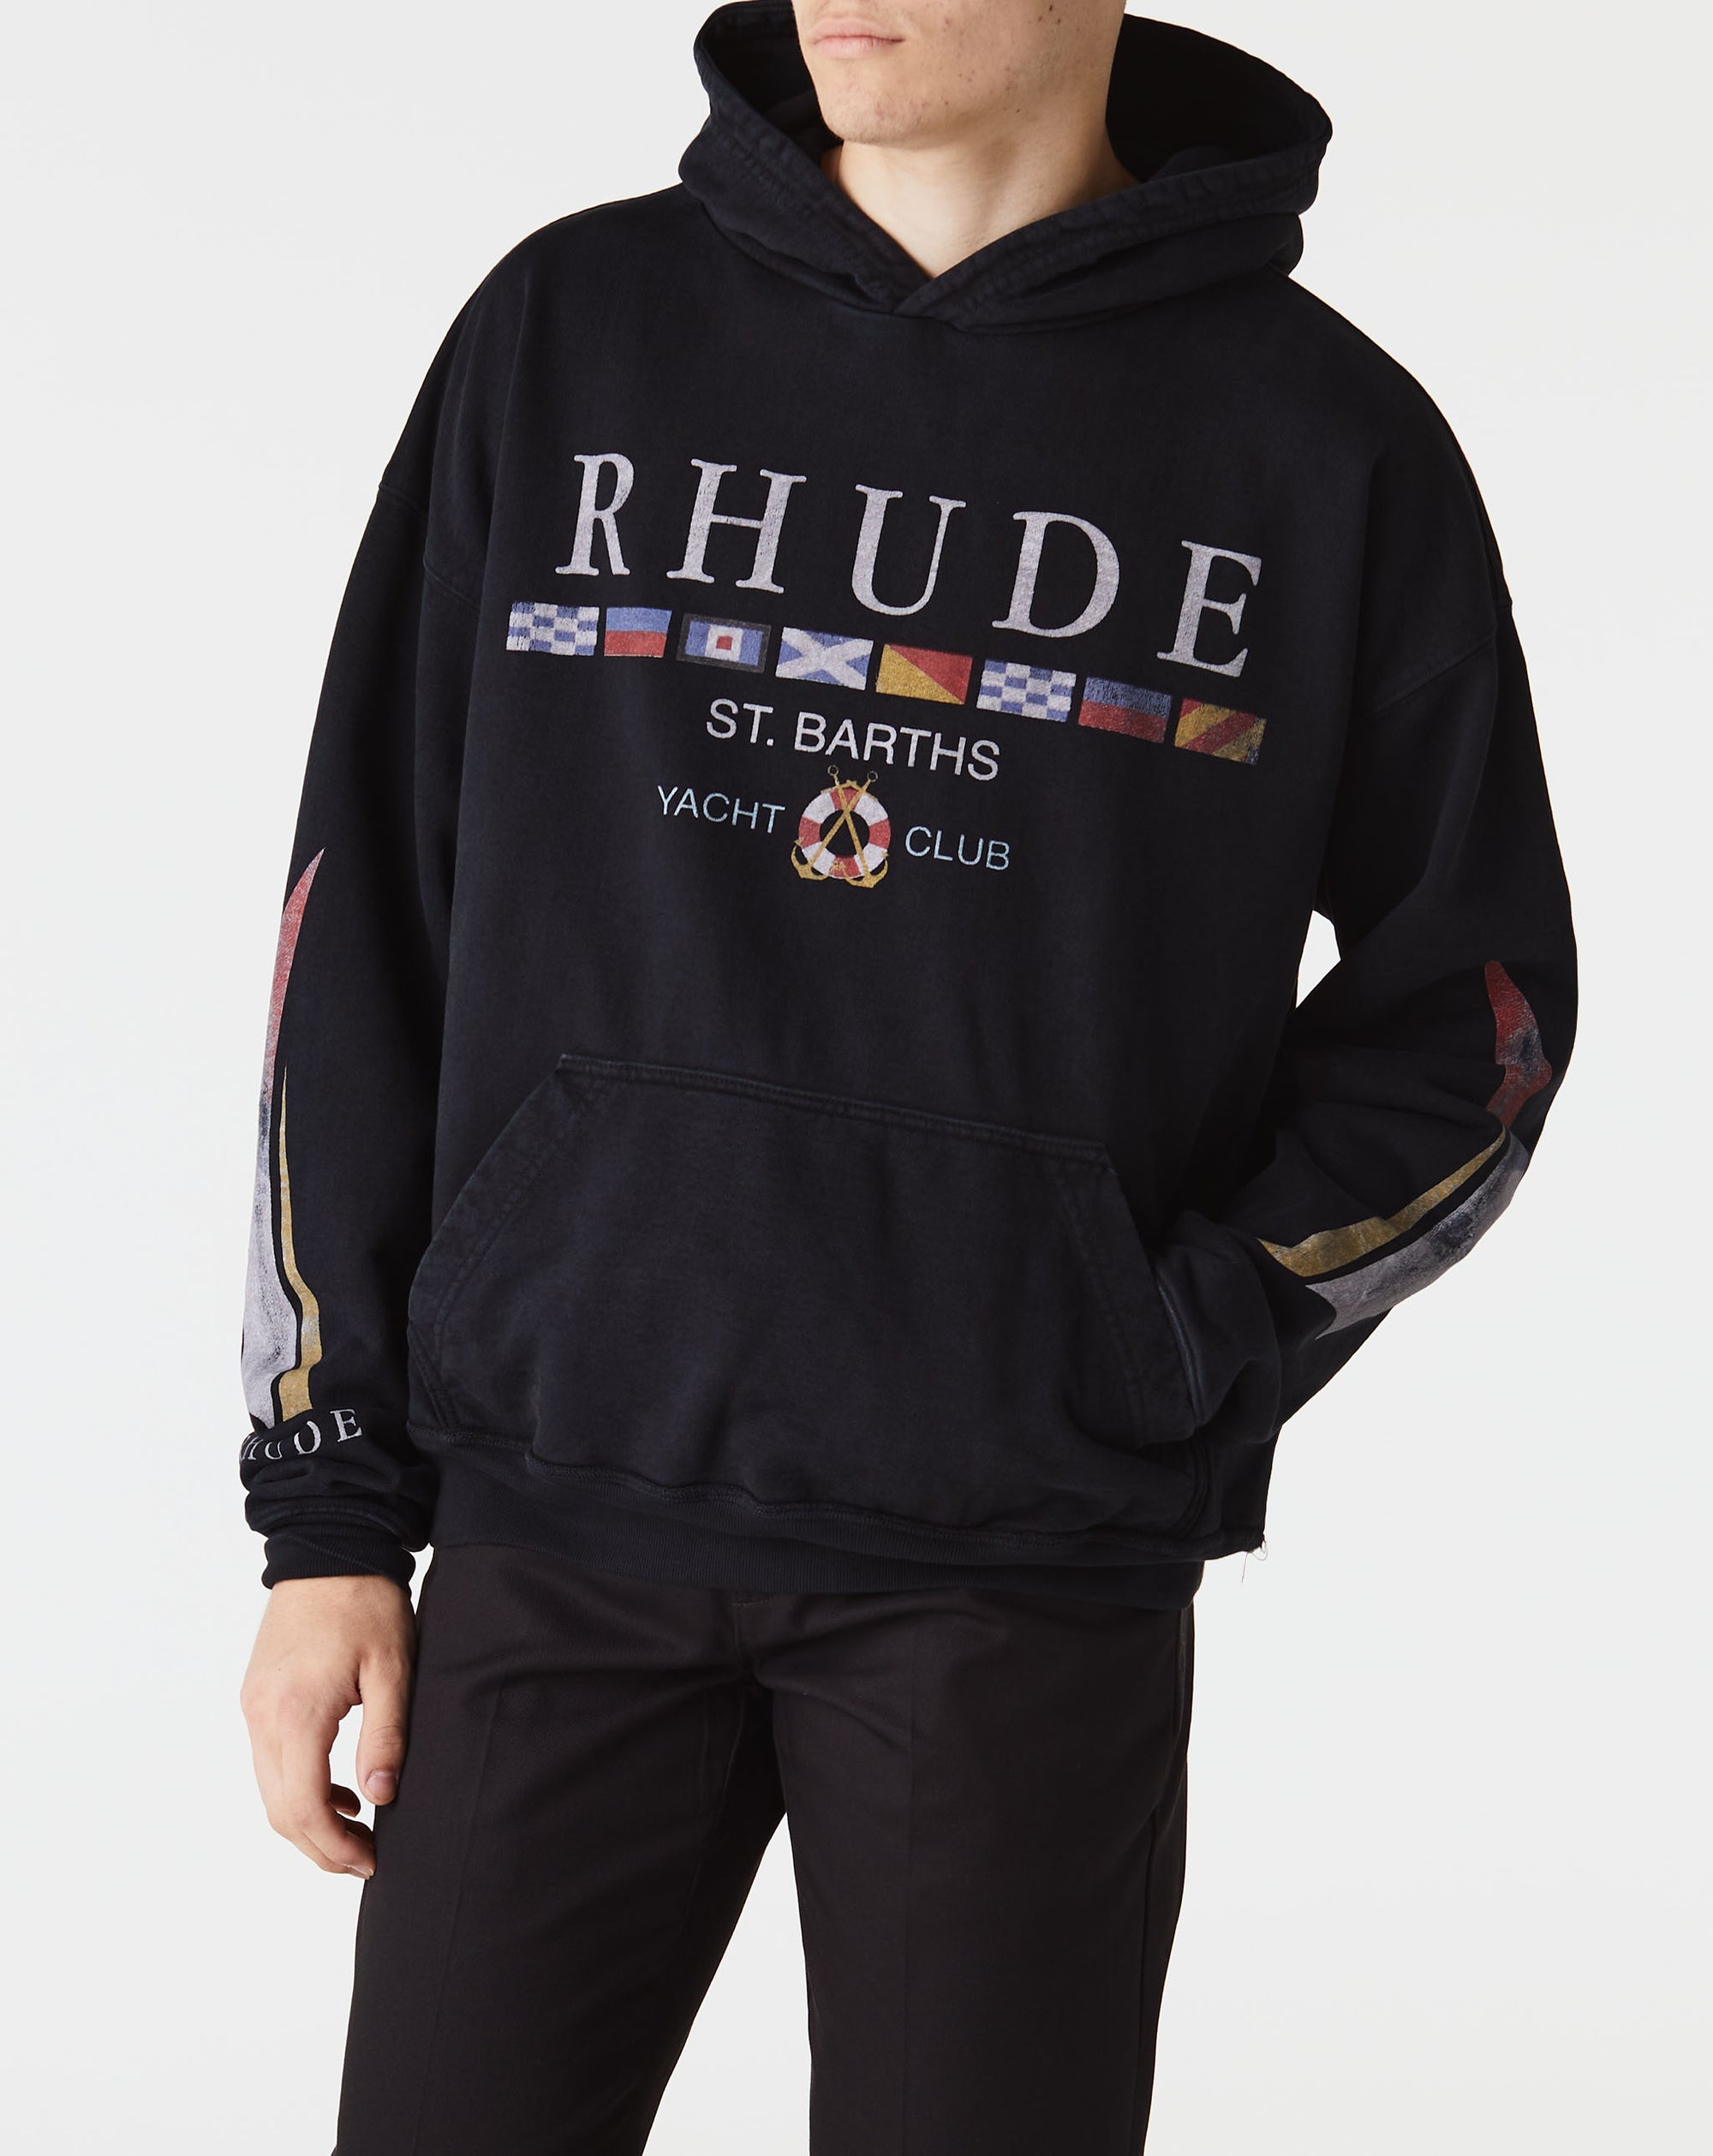 Rhude Yacht Club Hoodie - Rule of Next Apparel